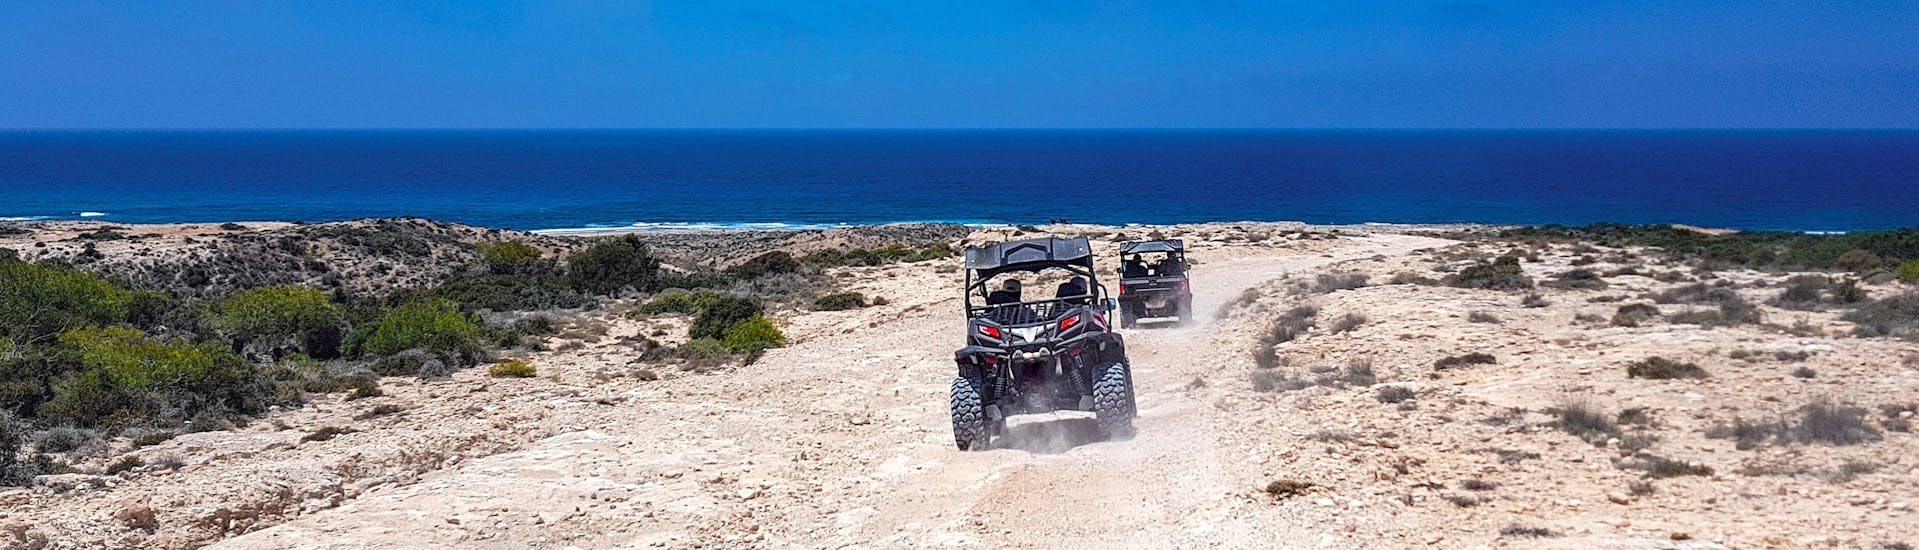 Deux buggys se dirigeant vers la côte lors d'une activité pour quad, ATV et buggy.